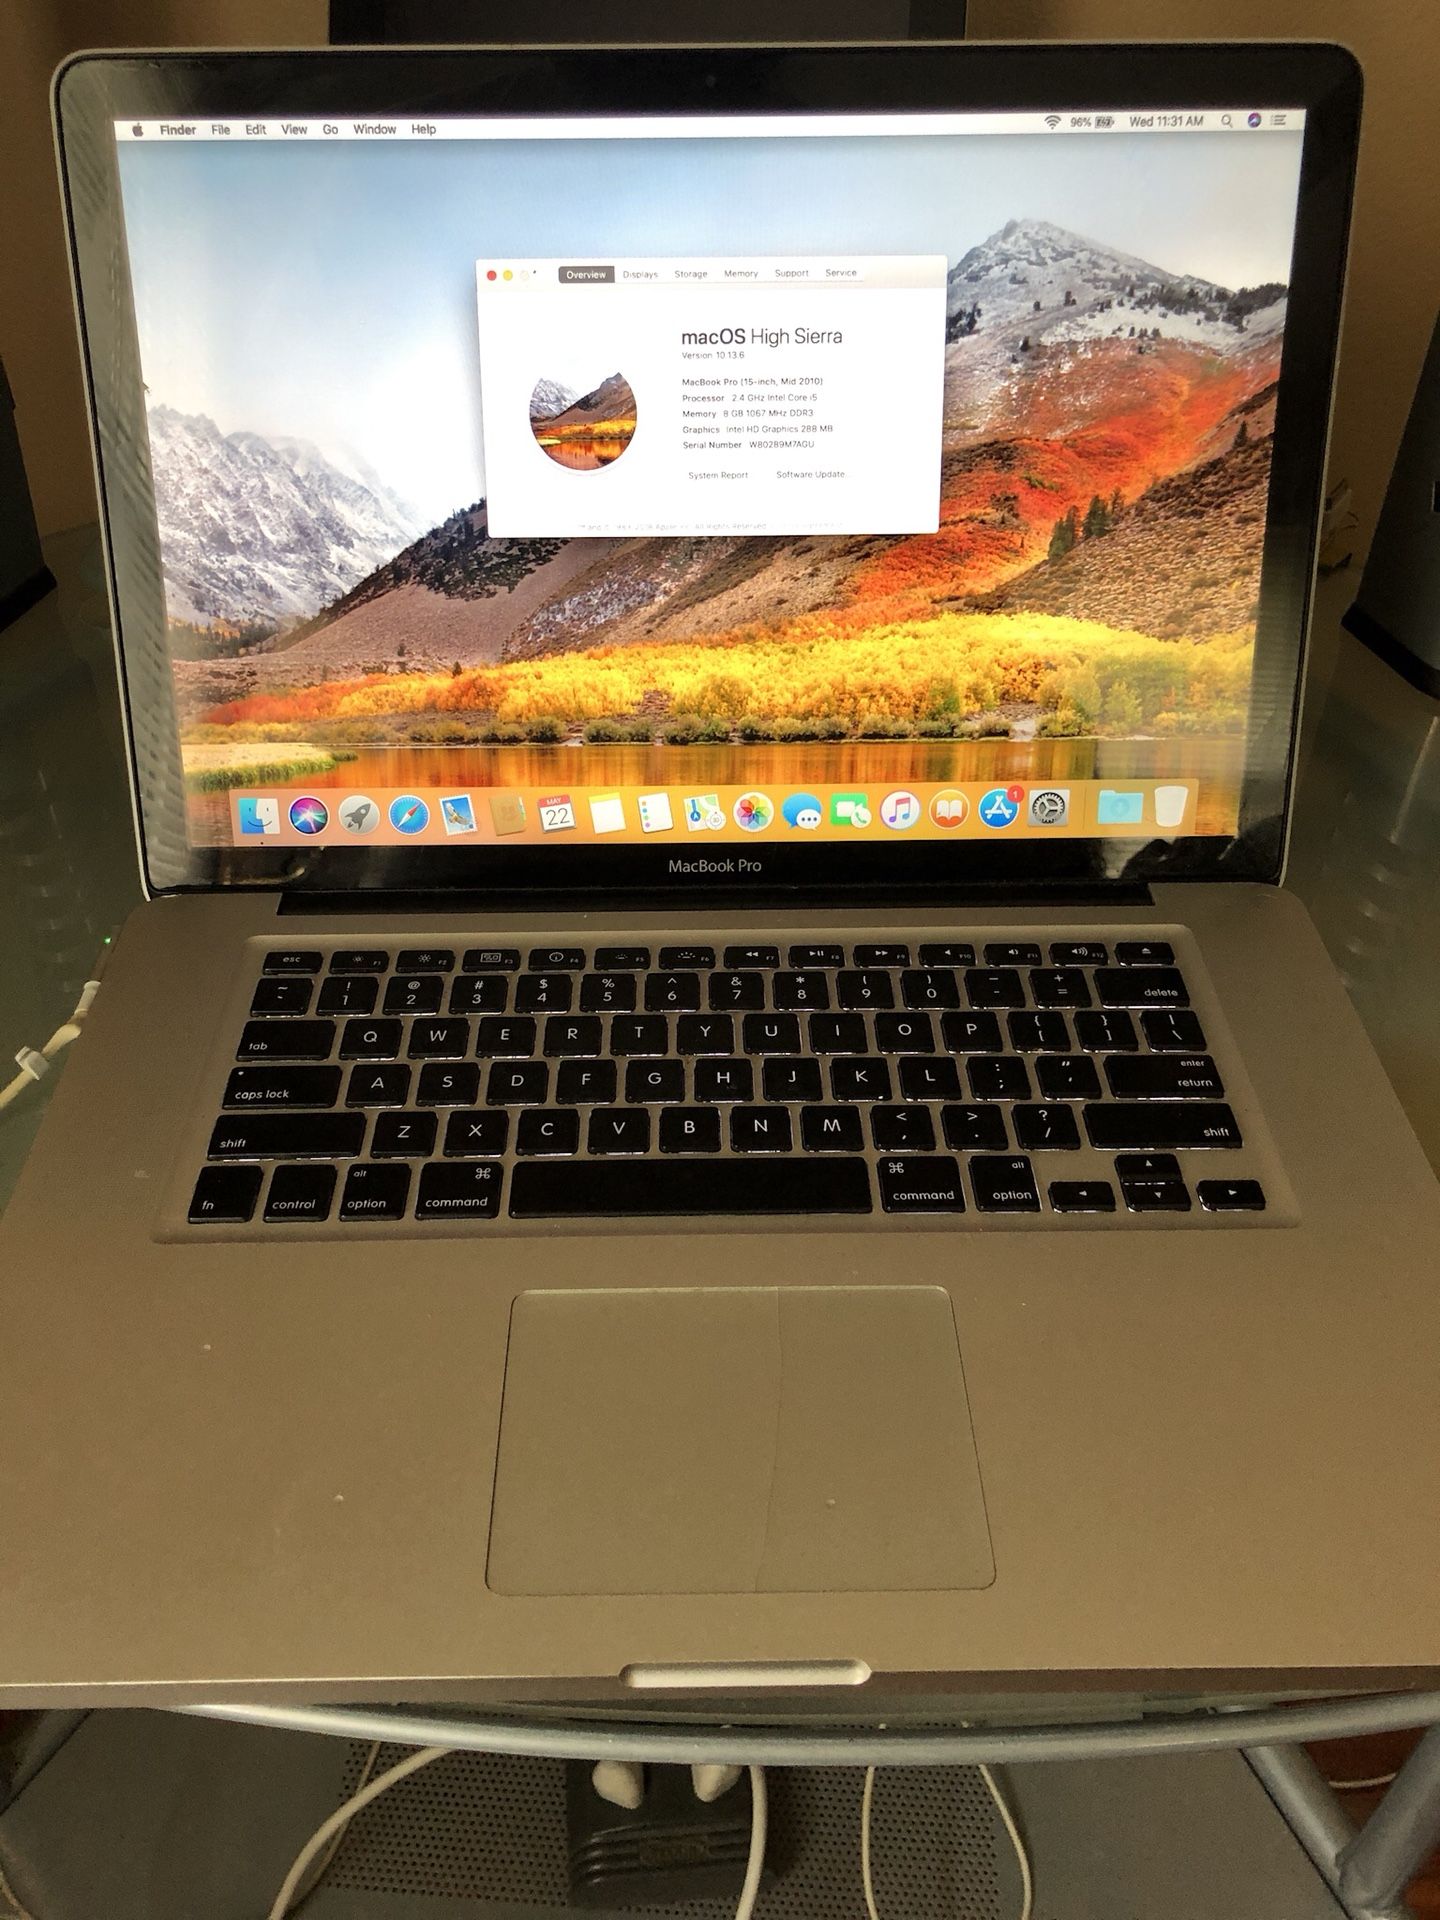 MacBook Pro 15.4” Display